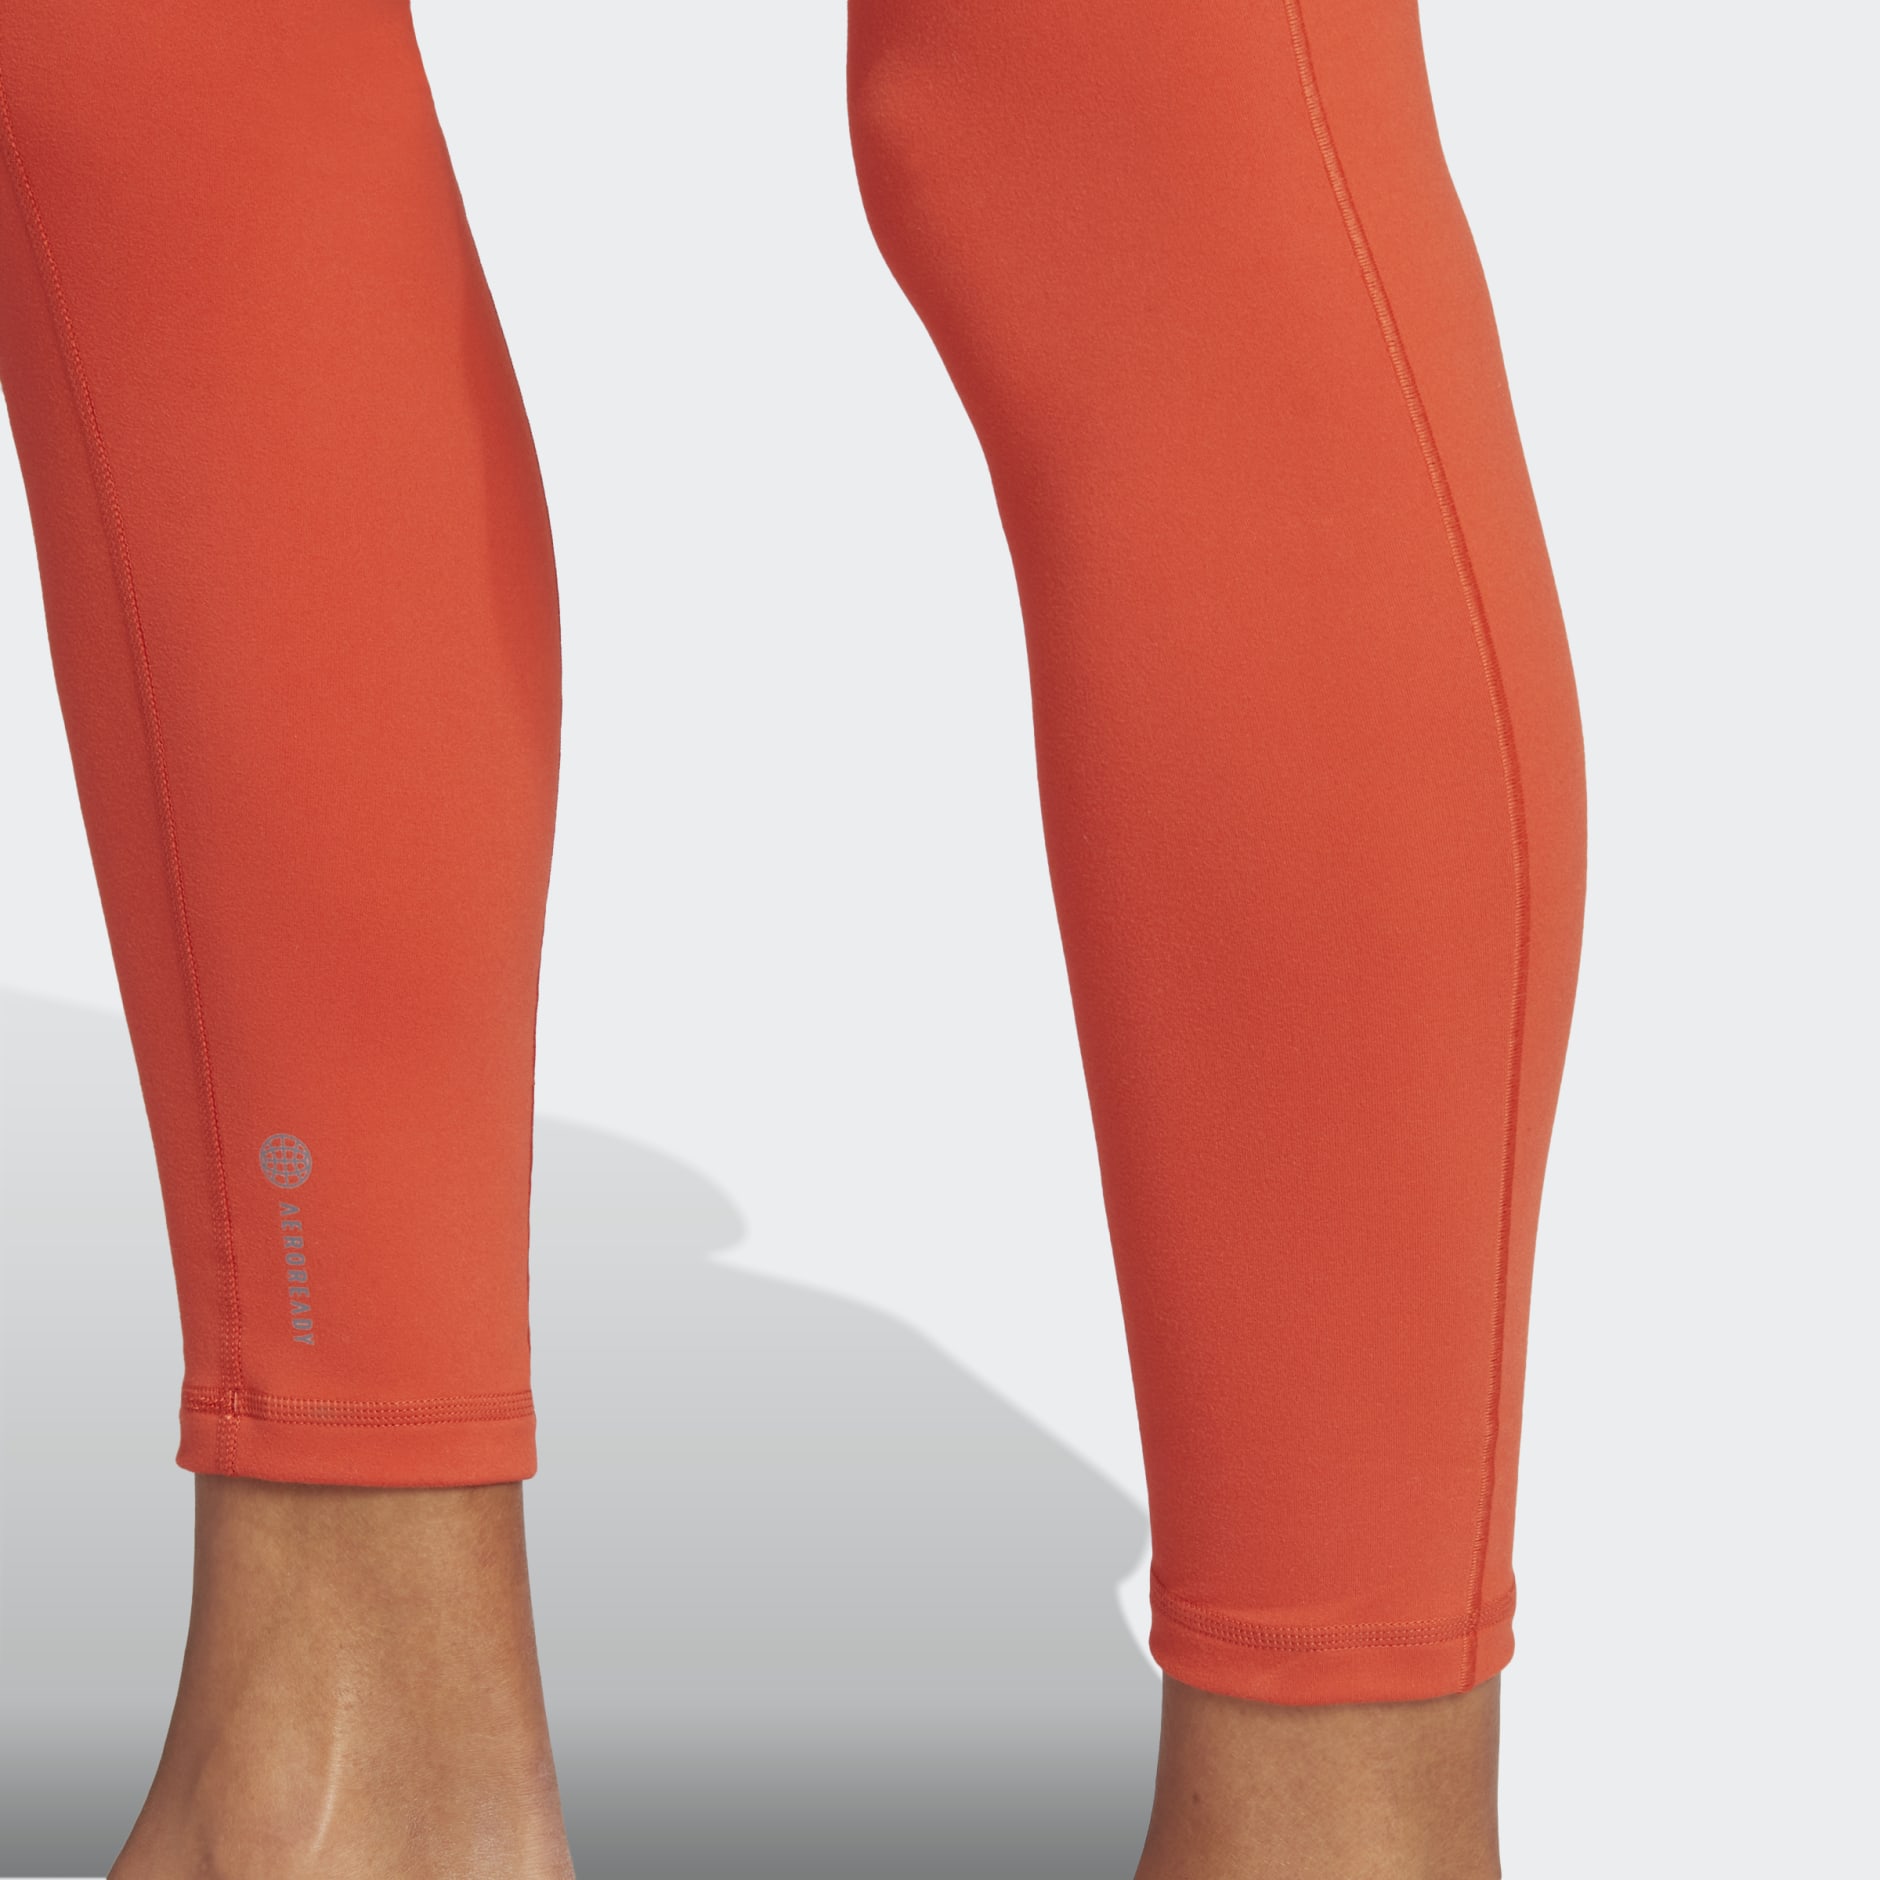 Buy Adidas women sportswear fit training 7 8 leggings red Online